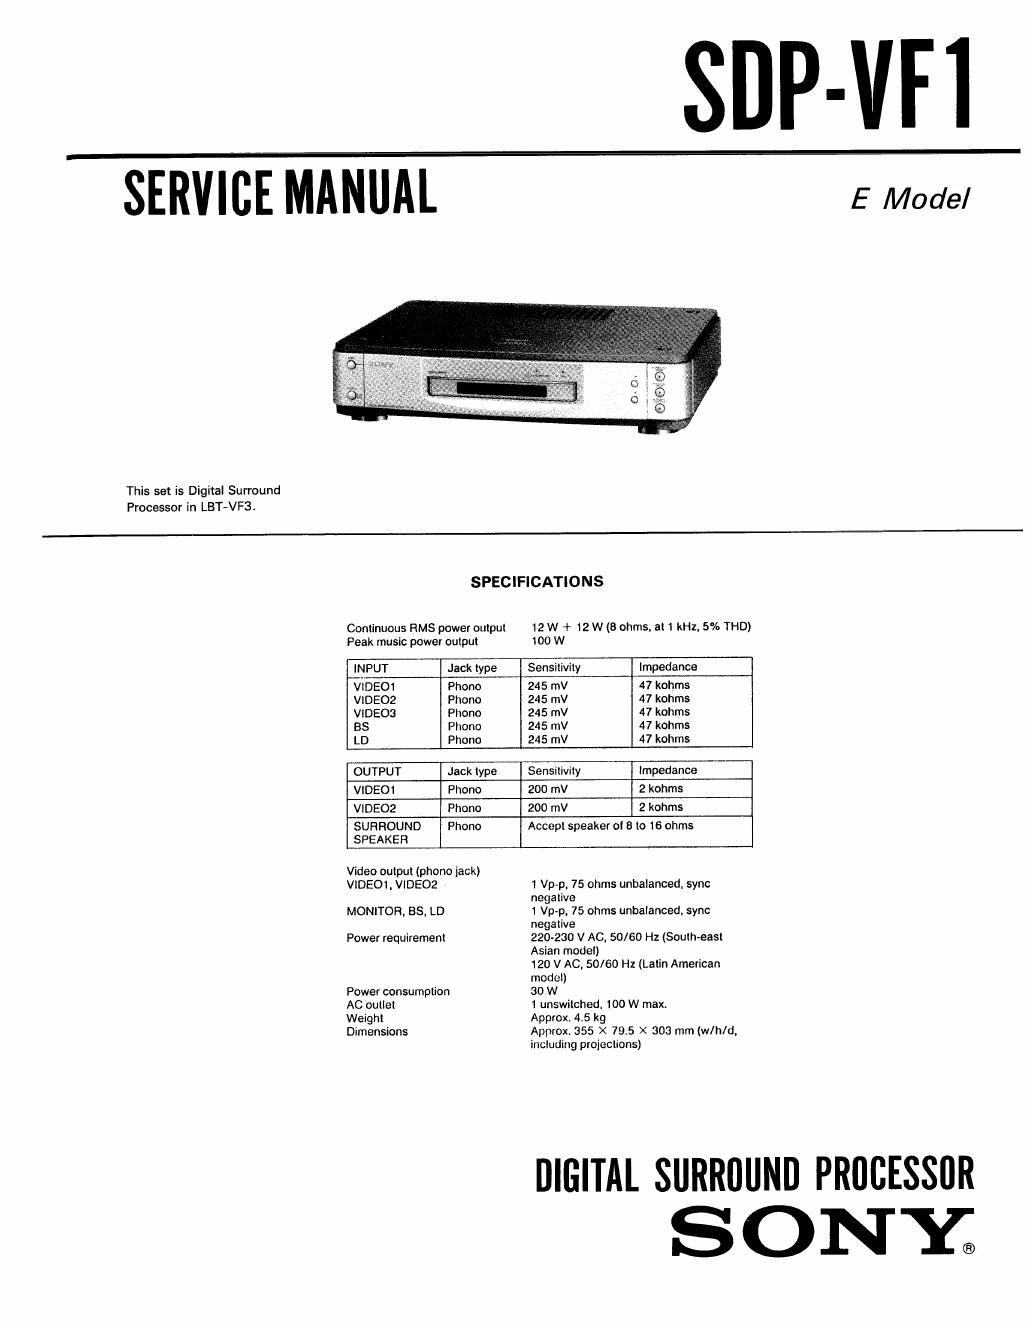 sony sdp vf 1 service manual